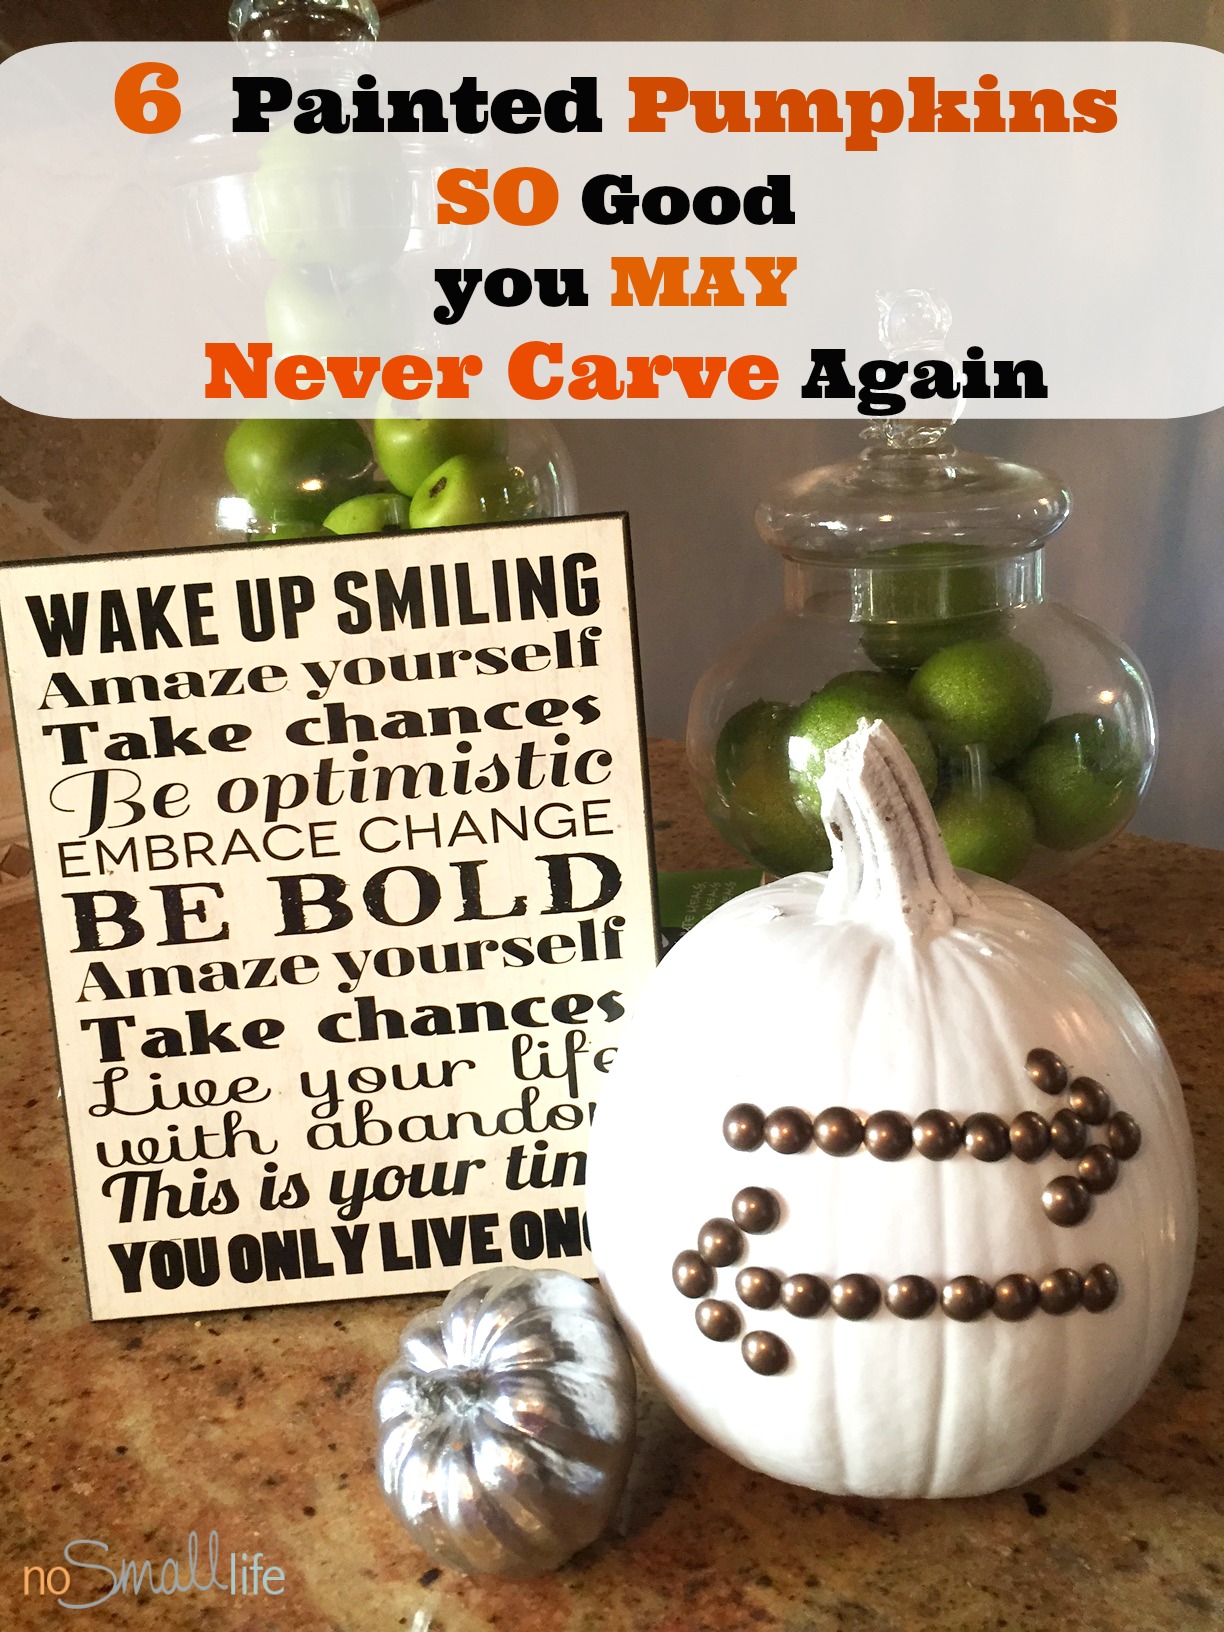 NEW No Carve Pumpkin Ideas-NoSmallLife